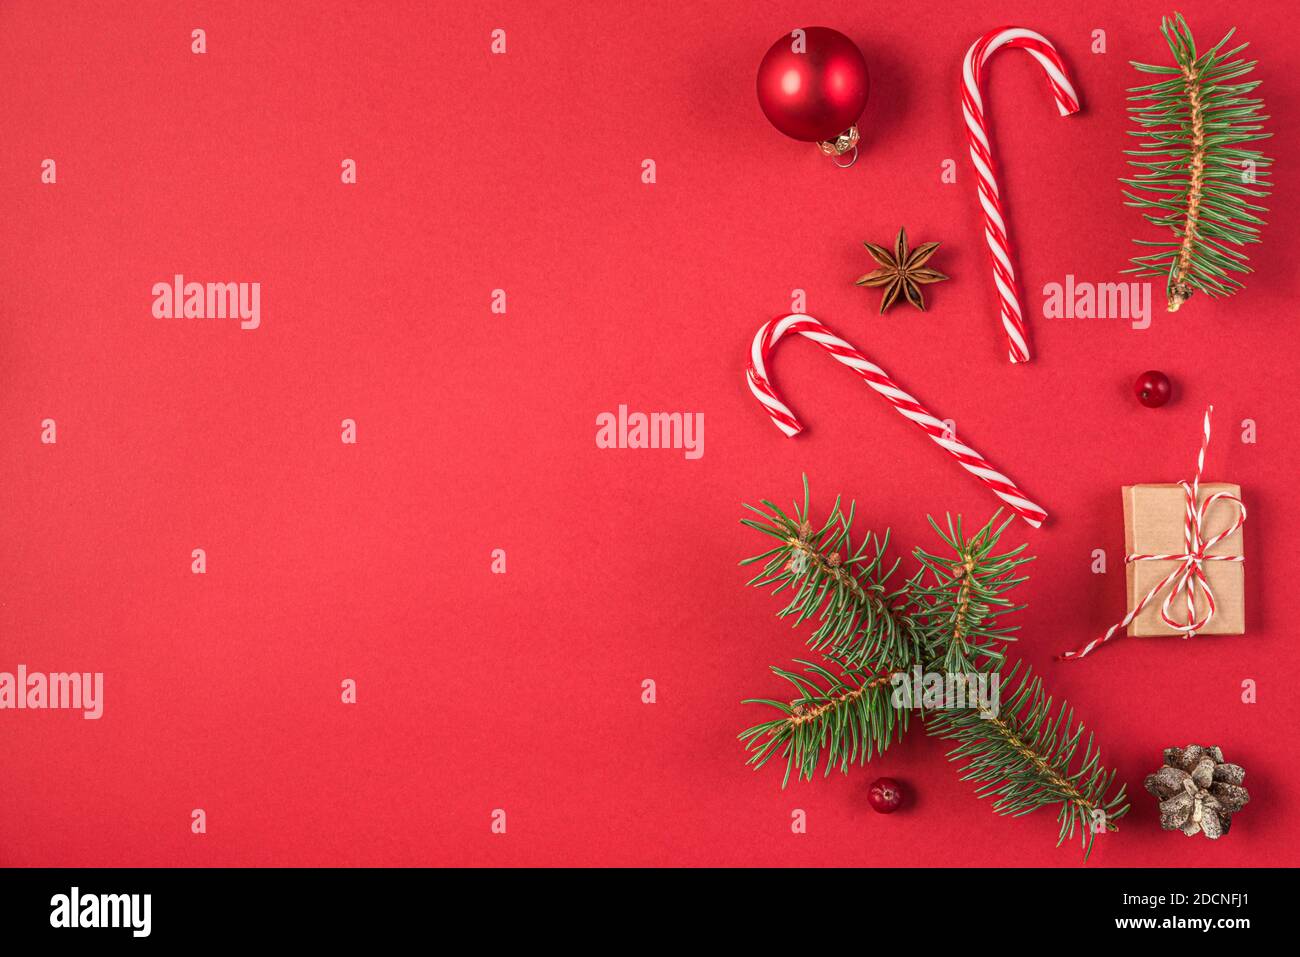 Weihnachts- oder Neujahrsgestaltung aus Tannenzweigen, Geschenkschachteln und Weihnachtsdekorationen auf rotem Hintergrund. Flachlage. Draufsicht mit Kopierraum Stockfoto